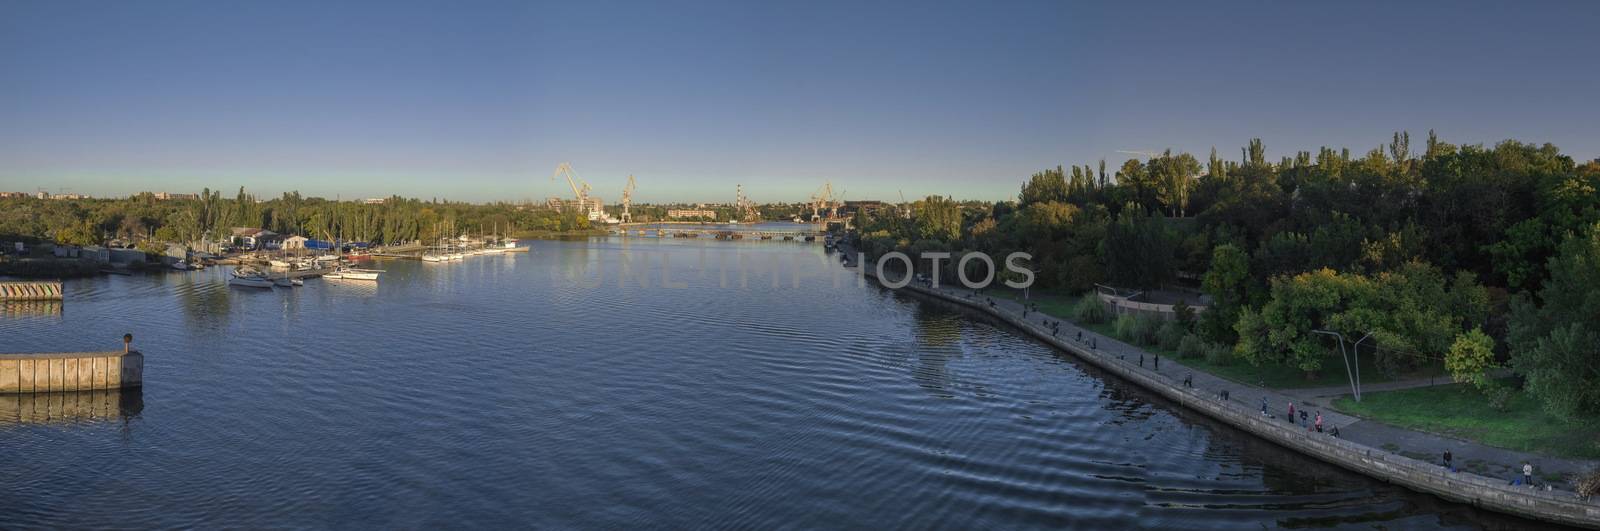 View of the Ingul River in Nikolaev, Ukraine by Multipedia